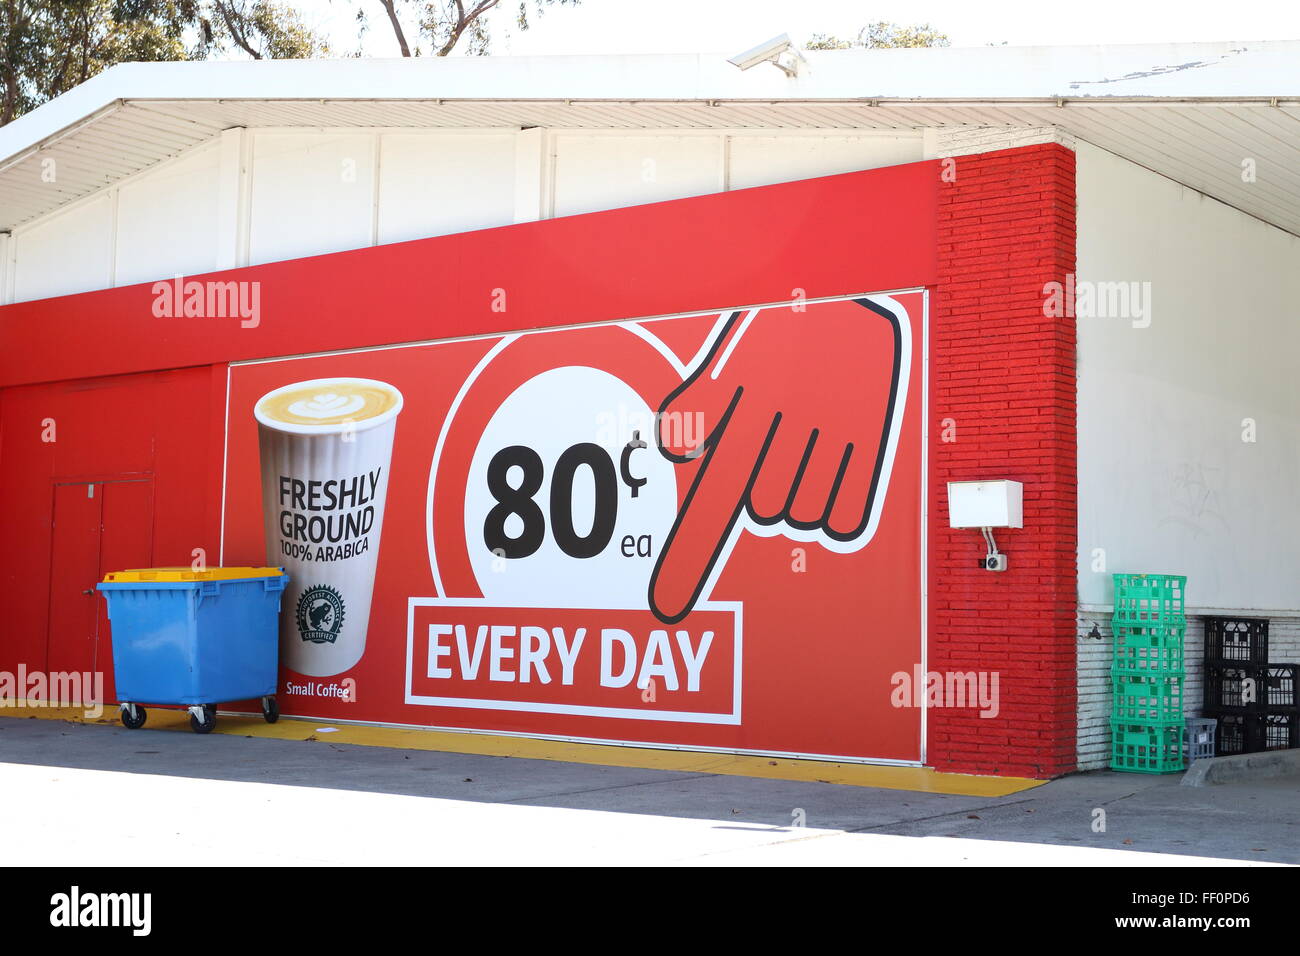 L'un des plus grands supermarchés australiens Coles annonce sur le mur Banque D'Images